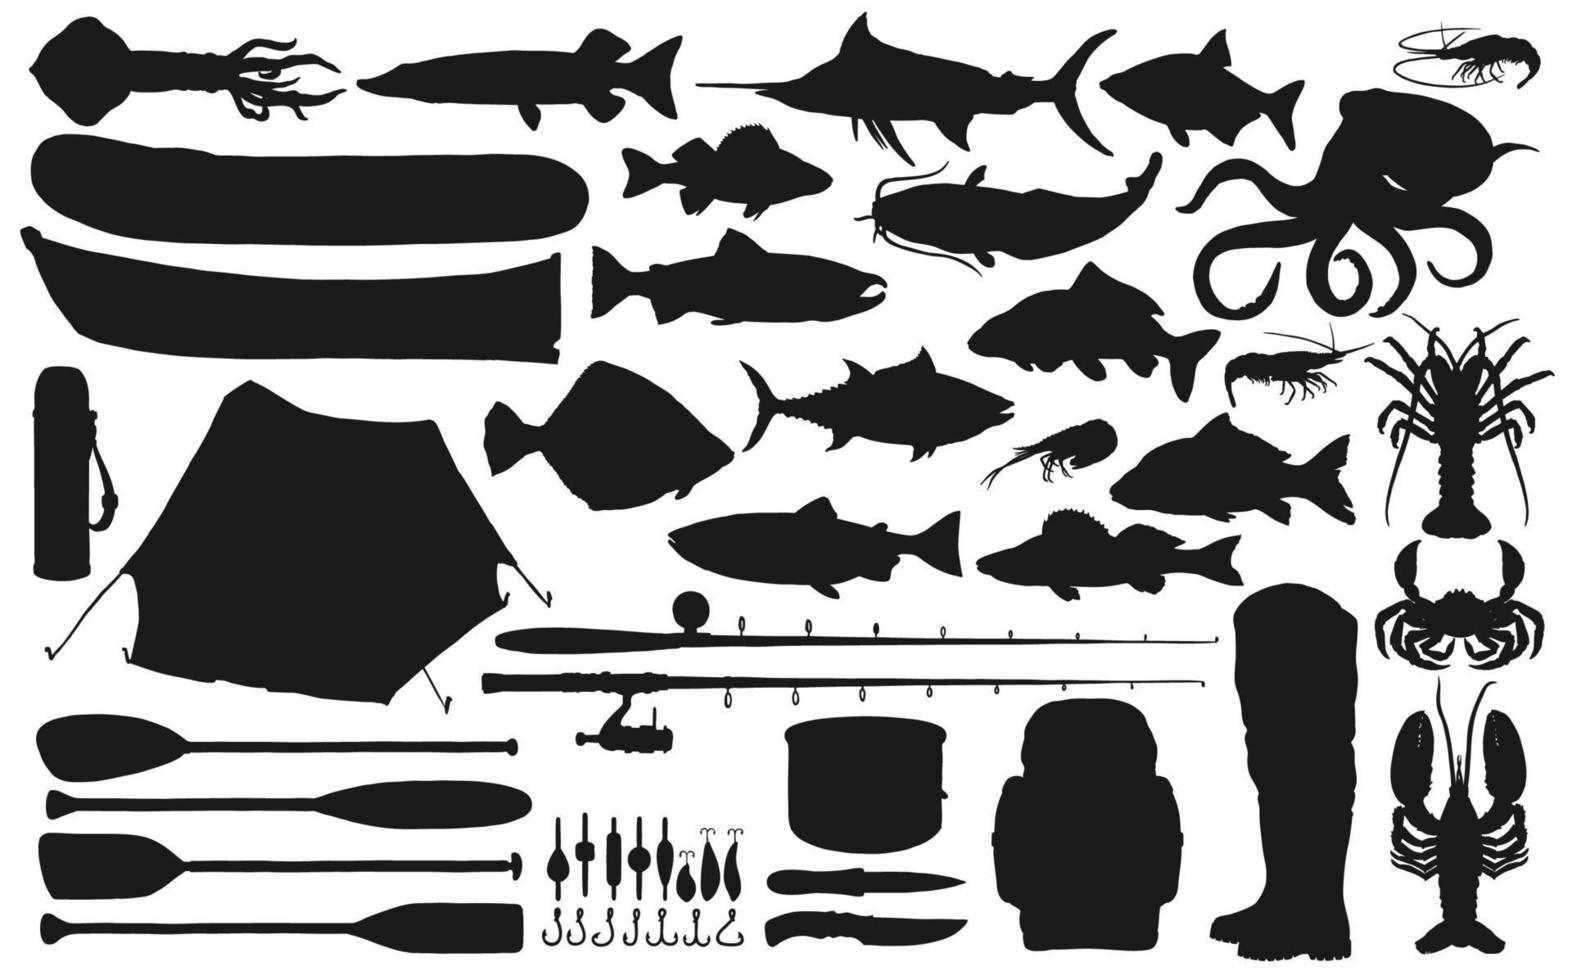 équipement de pêche et attirail avec des silhouettes de poissons vecteur